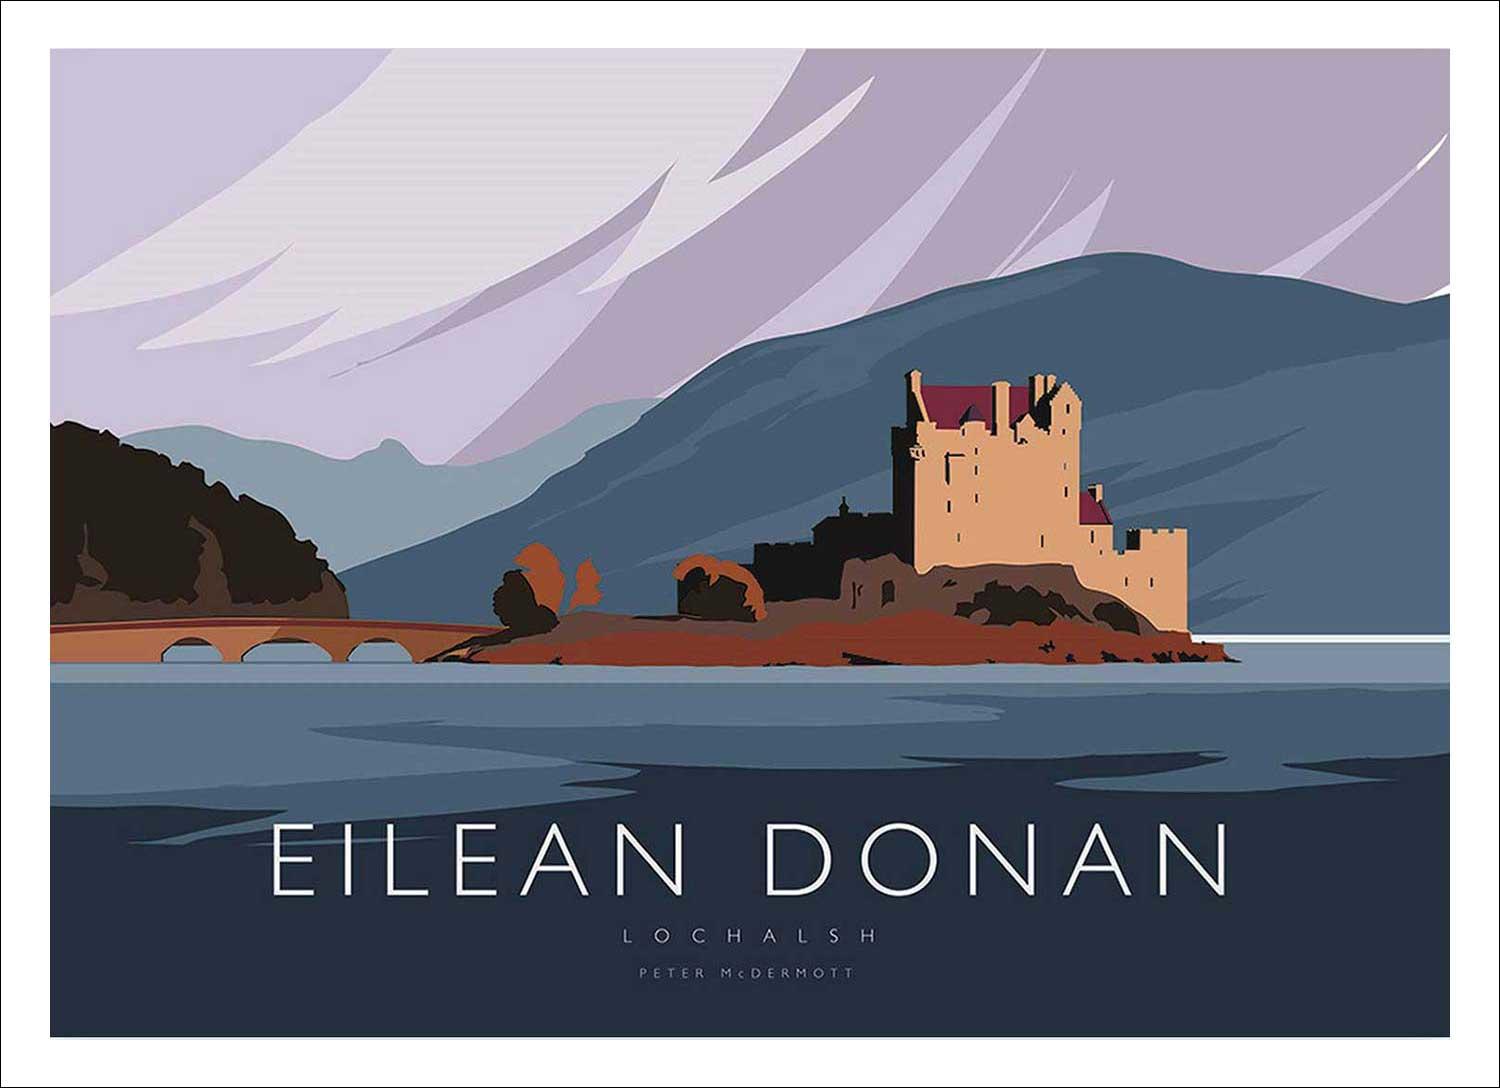 Eilean Donan Art Print from an original illustration by artist Peter McDermott